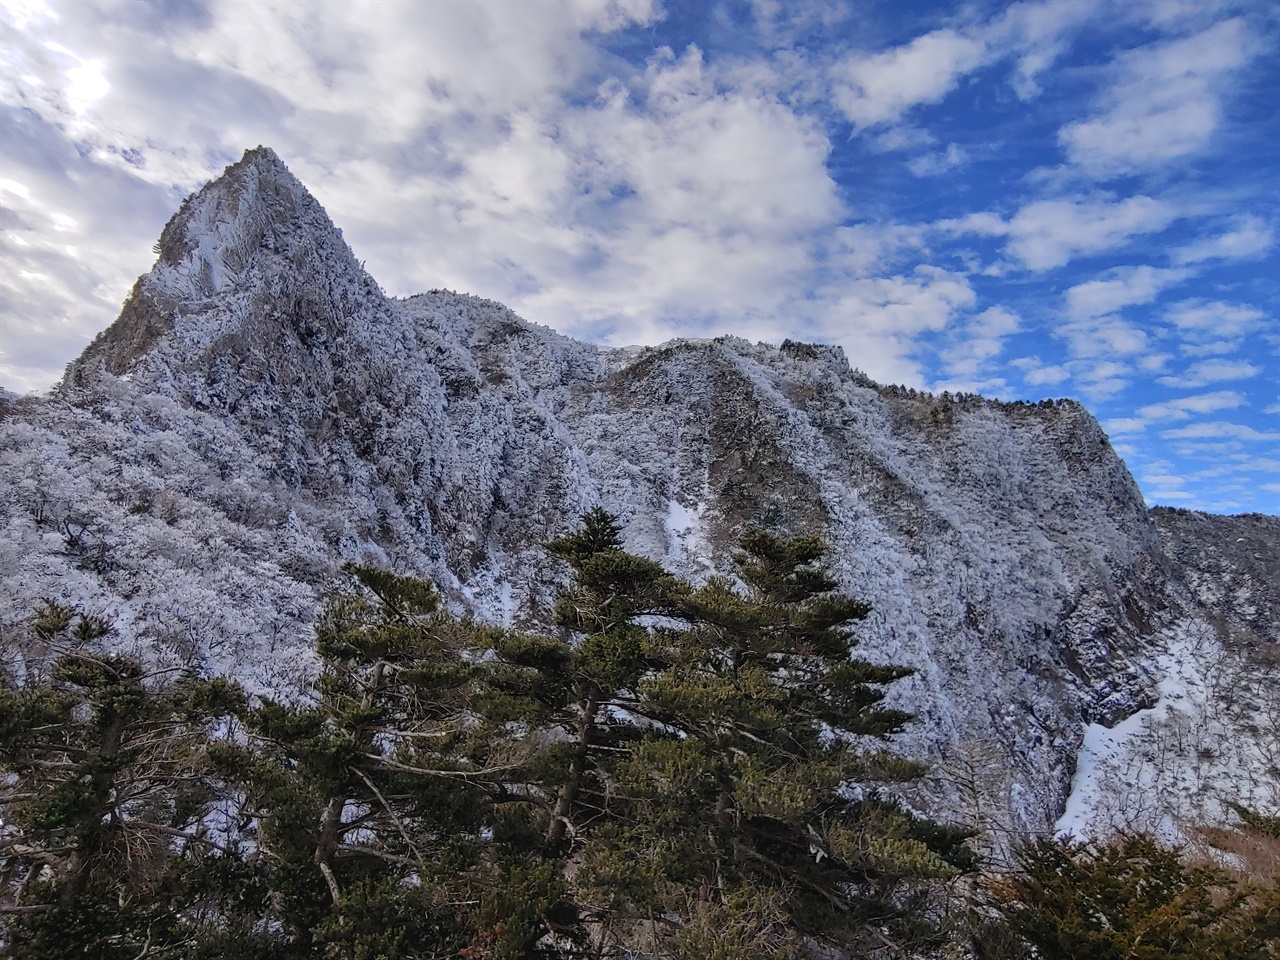 한라산 삼각봉 설경 관음사코스에서 1500미터 정도에 있는 삼각봉 대피소에서 촬영한 한라산 삼각봉 설경